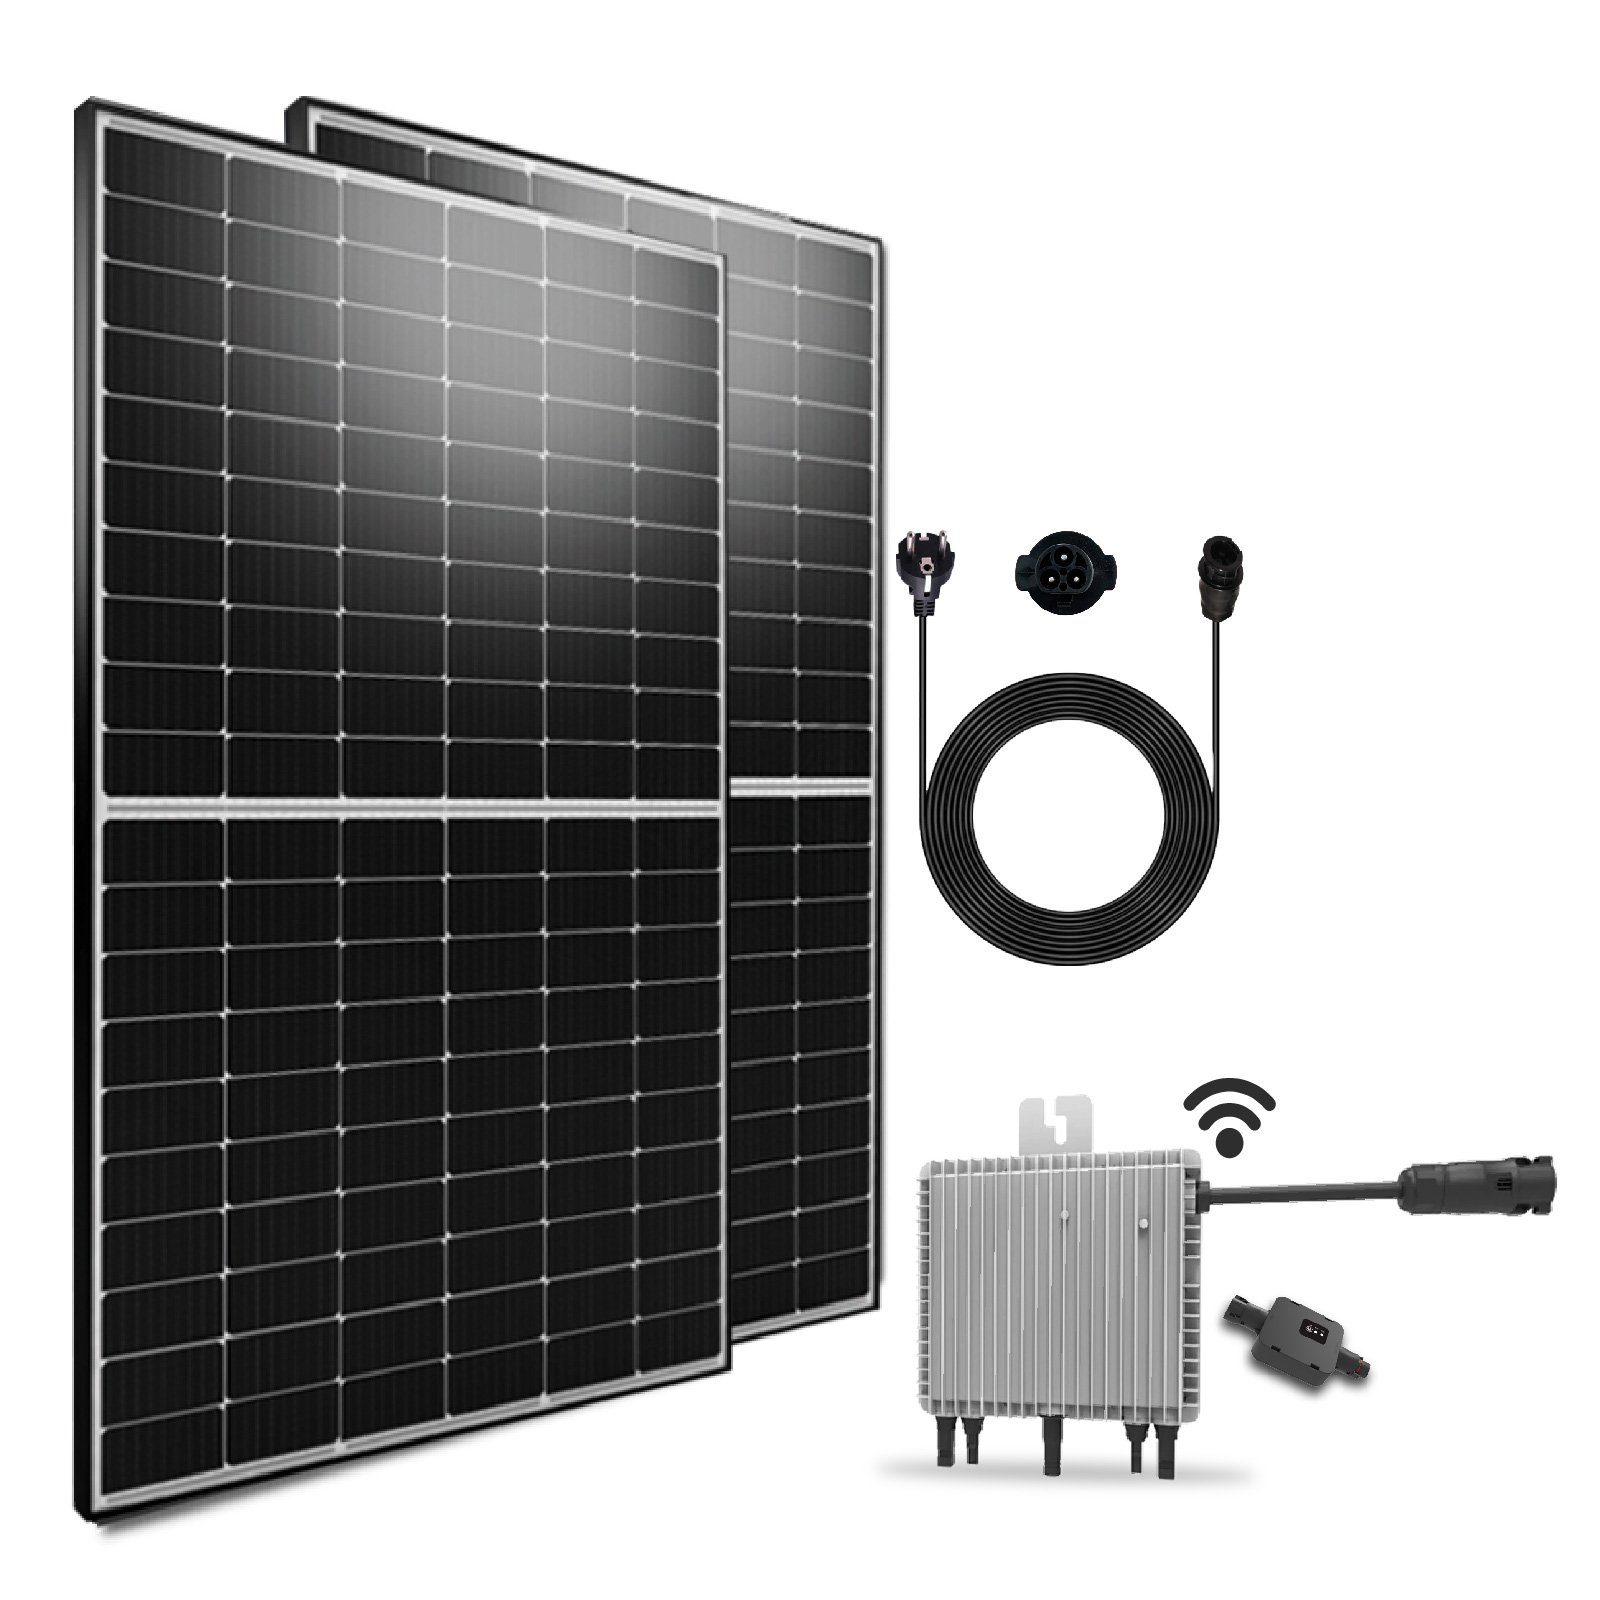 https://i.otto.de/i/otto/61ced517-e6a2-46d5-bc06-329e9a0a6055/epp-solar-solaranlage-1000w-800w-photovoltaik-balkonkraftwerk-mini-pv-anlage-1000-00-w-monokristallin-komplettset-deye-wlan-wechselrichter-600w-upgradebar-auf-800w-balkon-solaranlage-steckerfertig-fuer-ihr-haus-plug-play.jpg?$formatz$